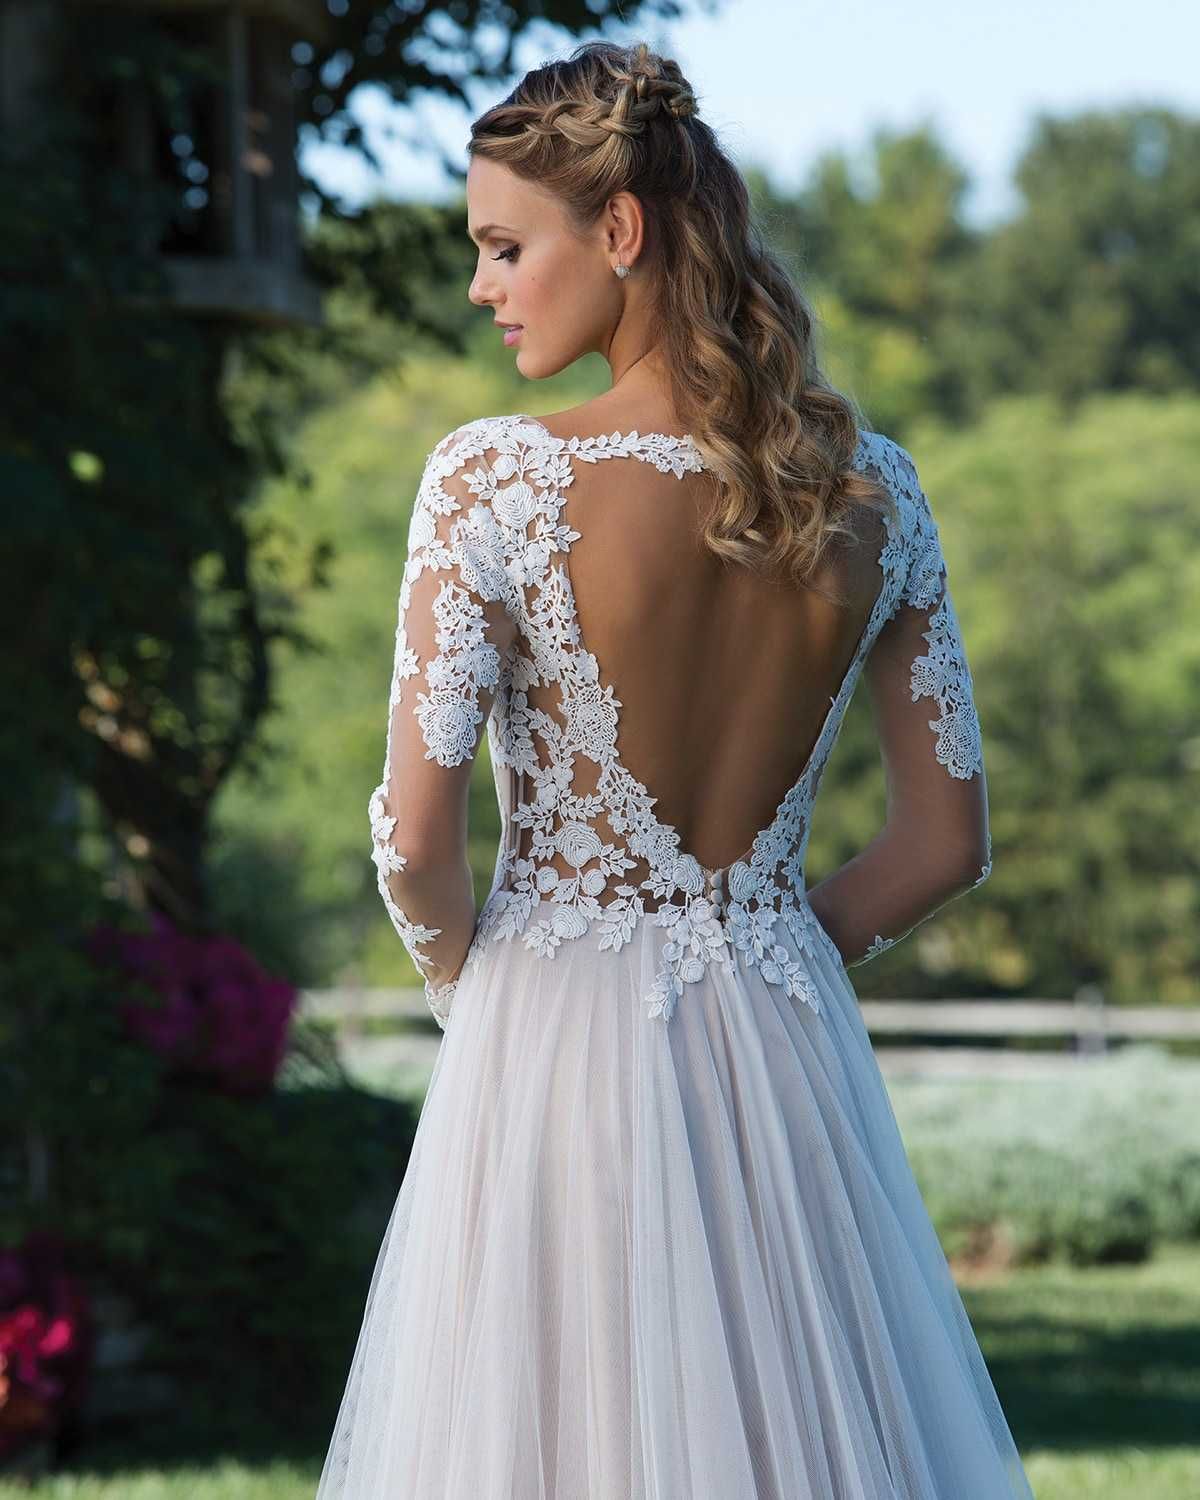 Sincerity Bridal 3972, suknia ślubna długi rękaw